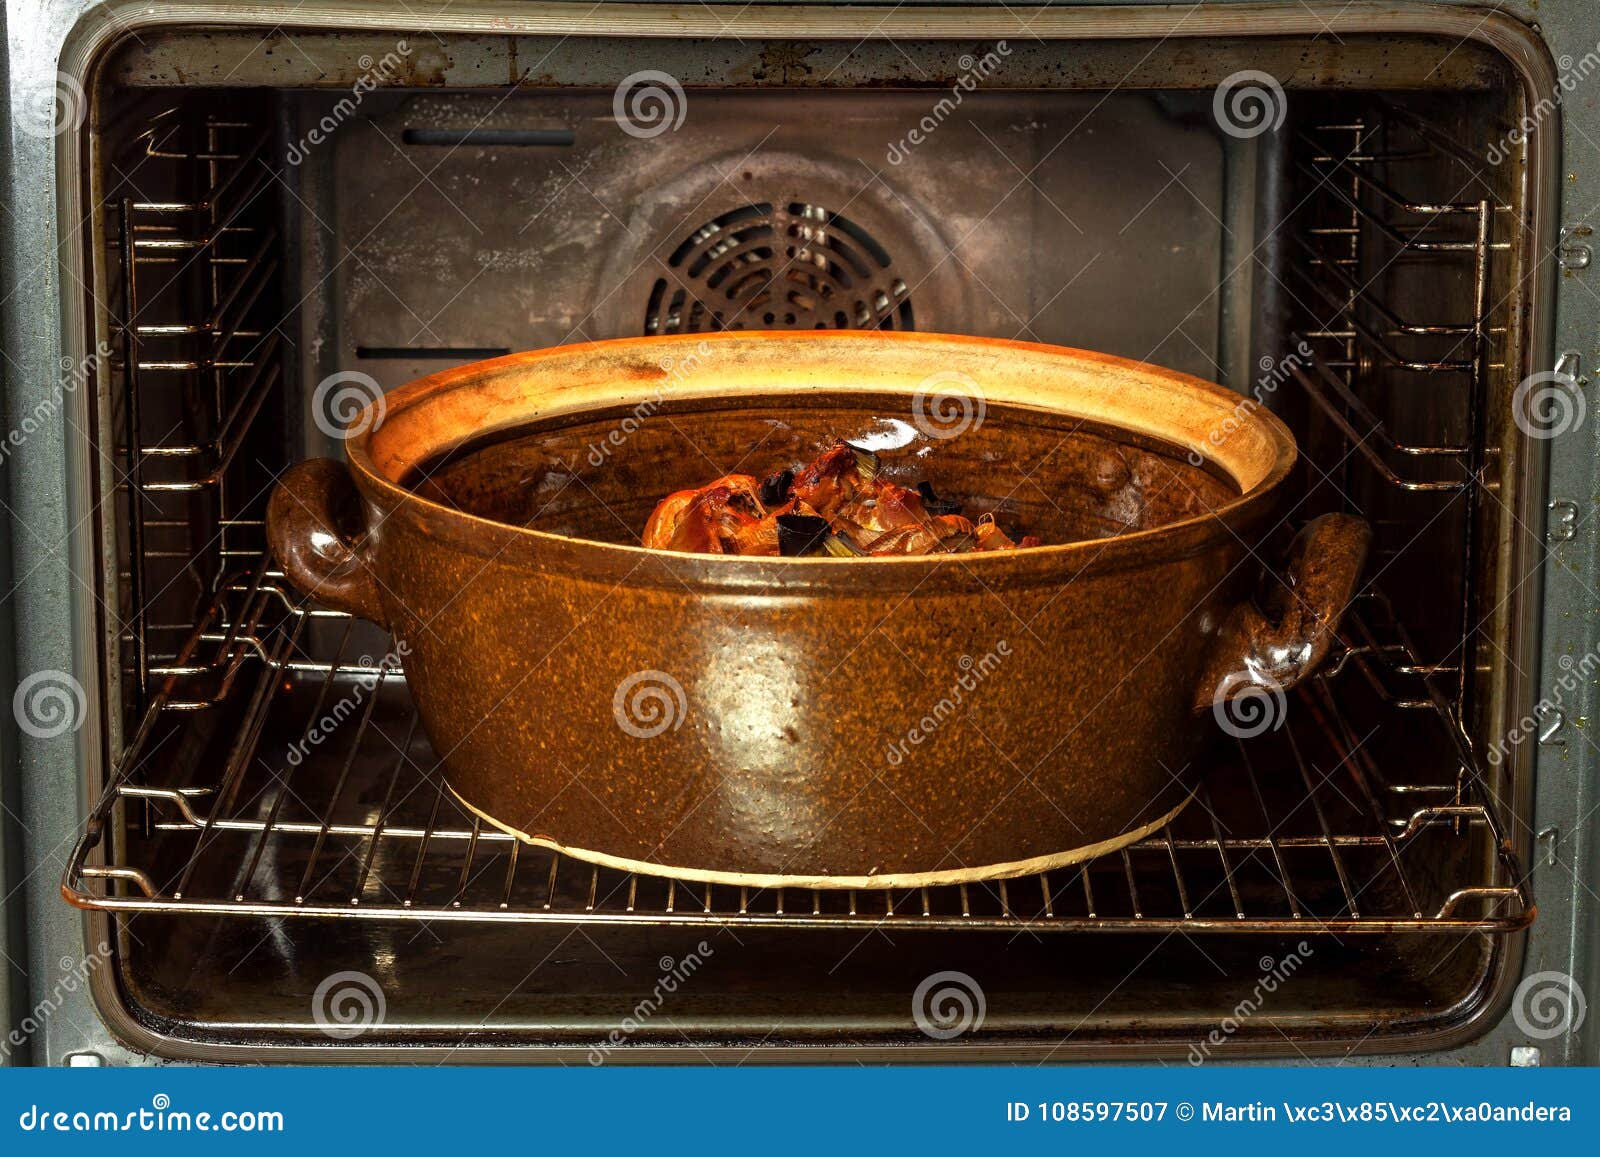 Можно ставить кастрюлю в духовку. Кастрюля для духовки. Мясо в глиняной посуде в духовке. Блюда в керамической кастрюле в духовке. Говядина в глиняной посуде в духовке.